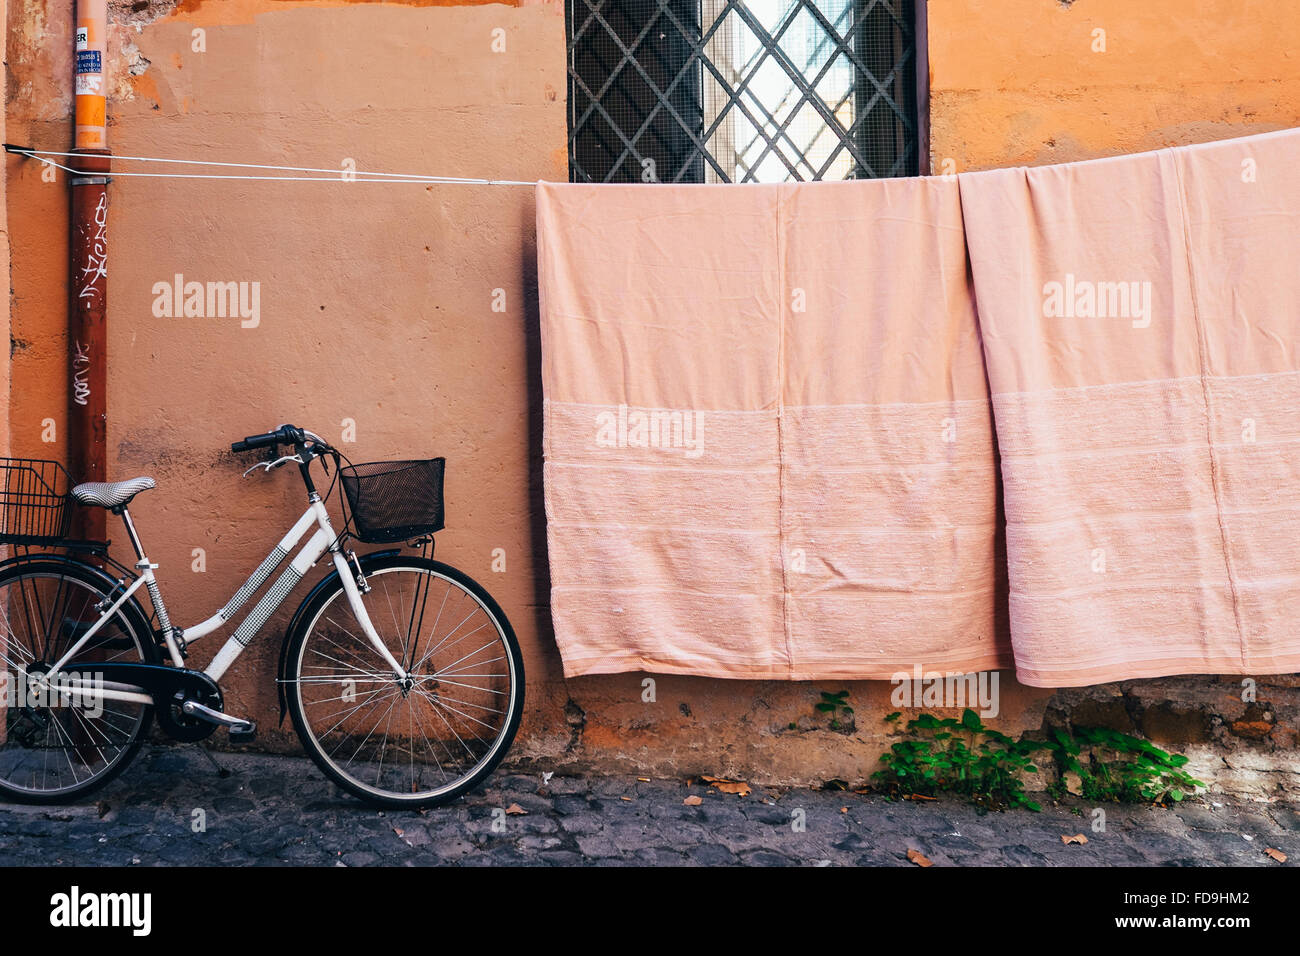 Farblich abgestimmte Wäsche aufgehängt, um zu trocknen und eine geparkte Fahrrad in Trastevere Neighboudhood von Rom, Italien Stockfoto